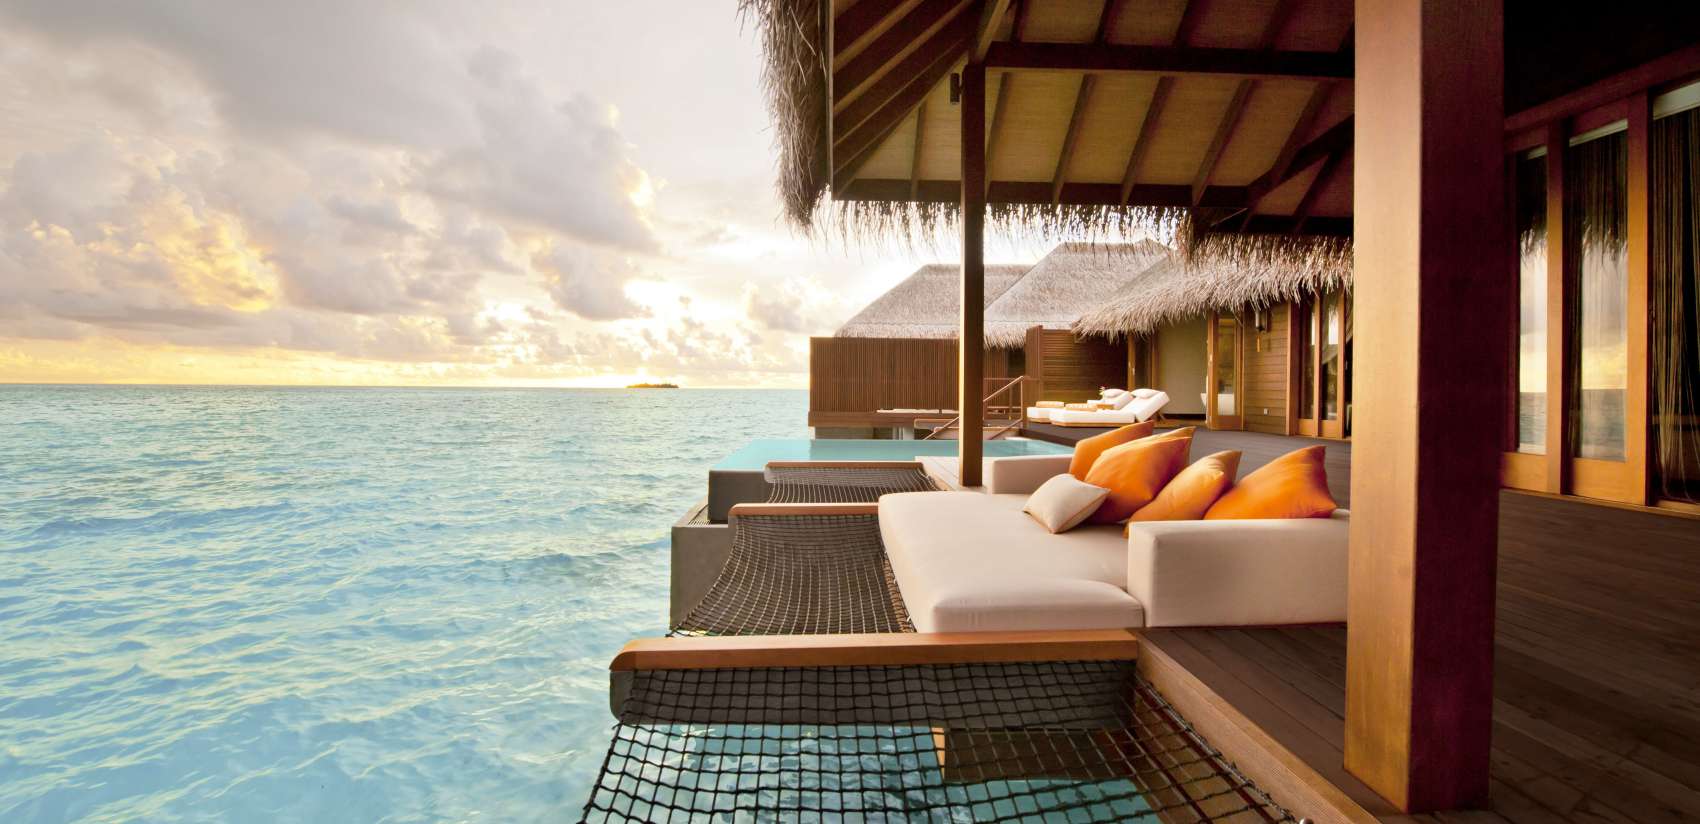 Malediven beste reistijd